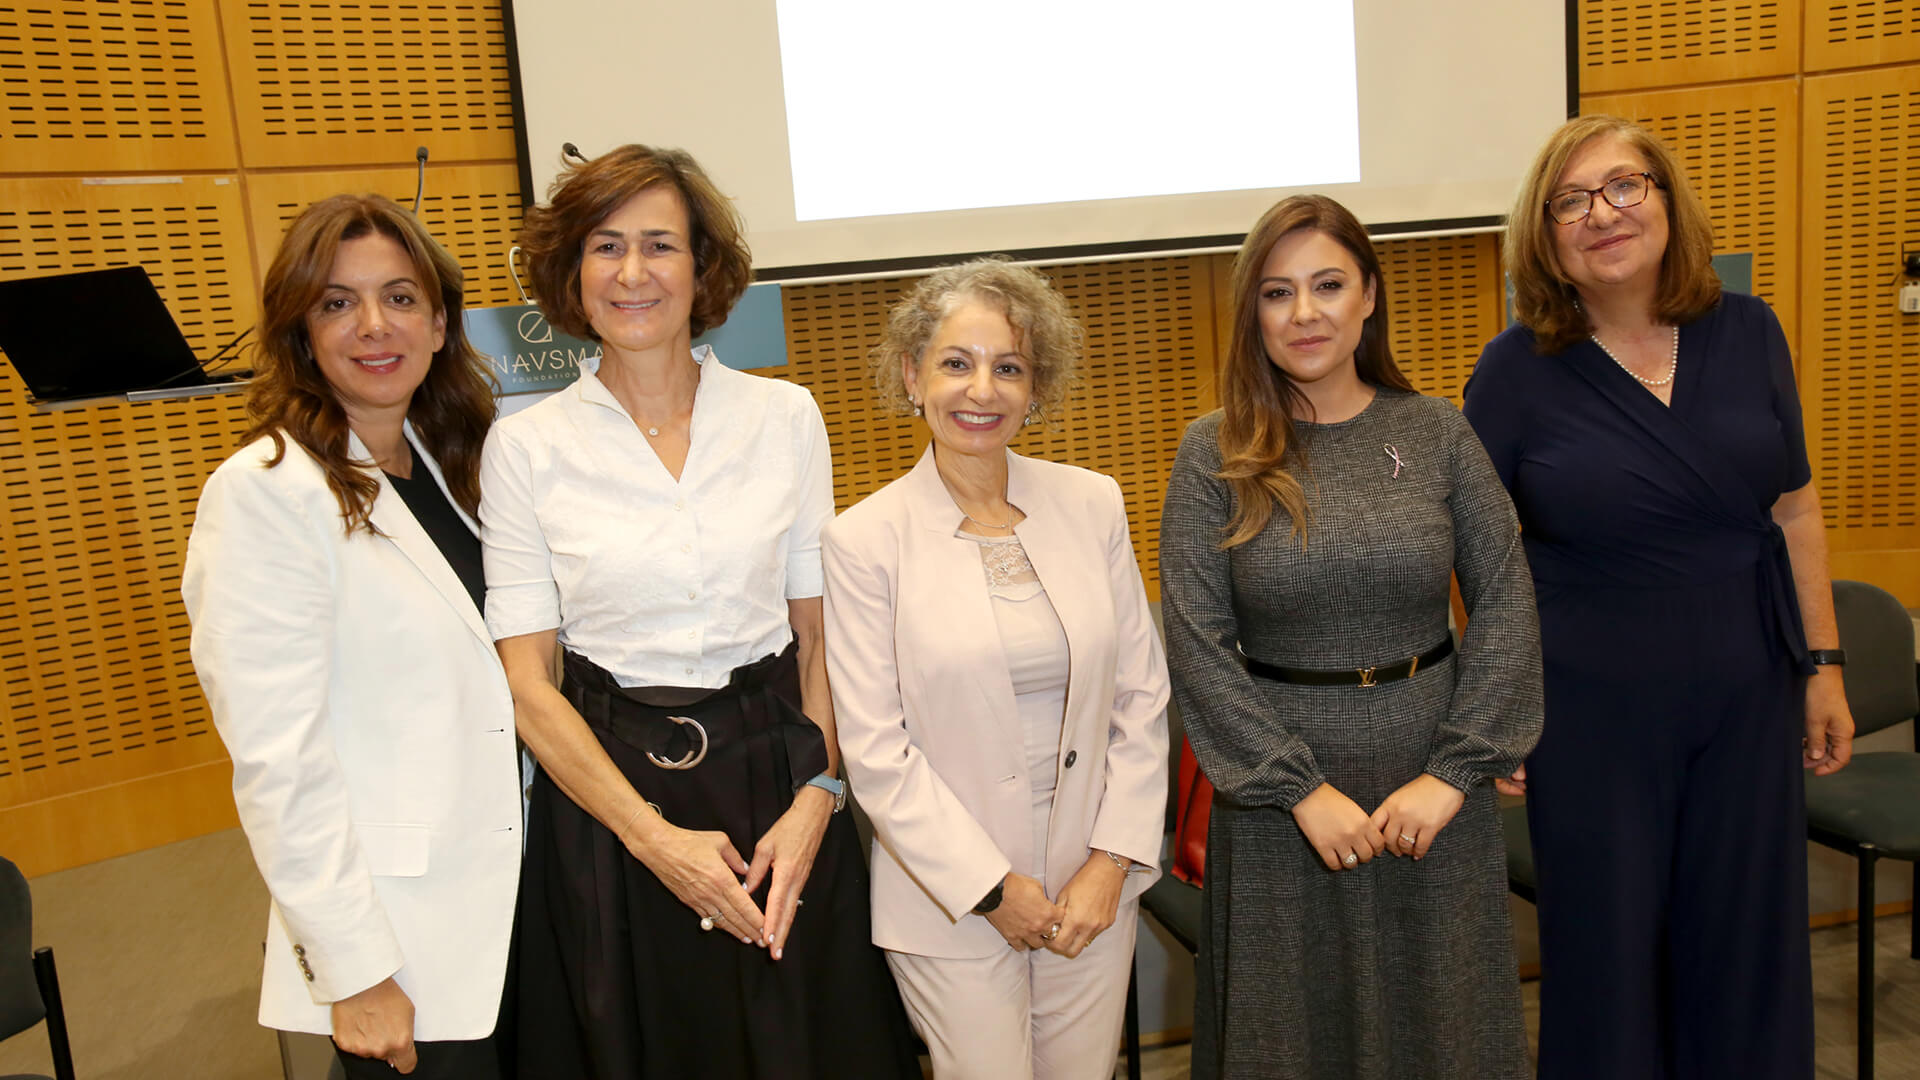 Το Enavsma Foundation παρουσίασε τέσσερις σημαντικές γυναίκες στους τομείς της βιοτεχνολογίας